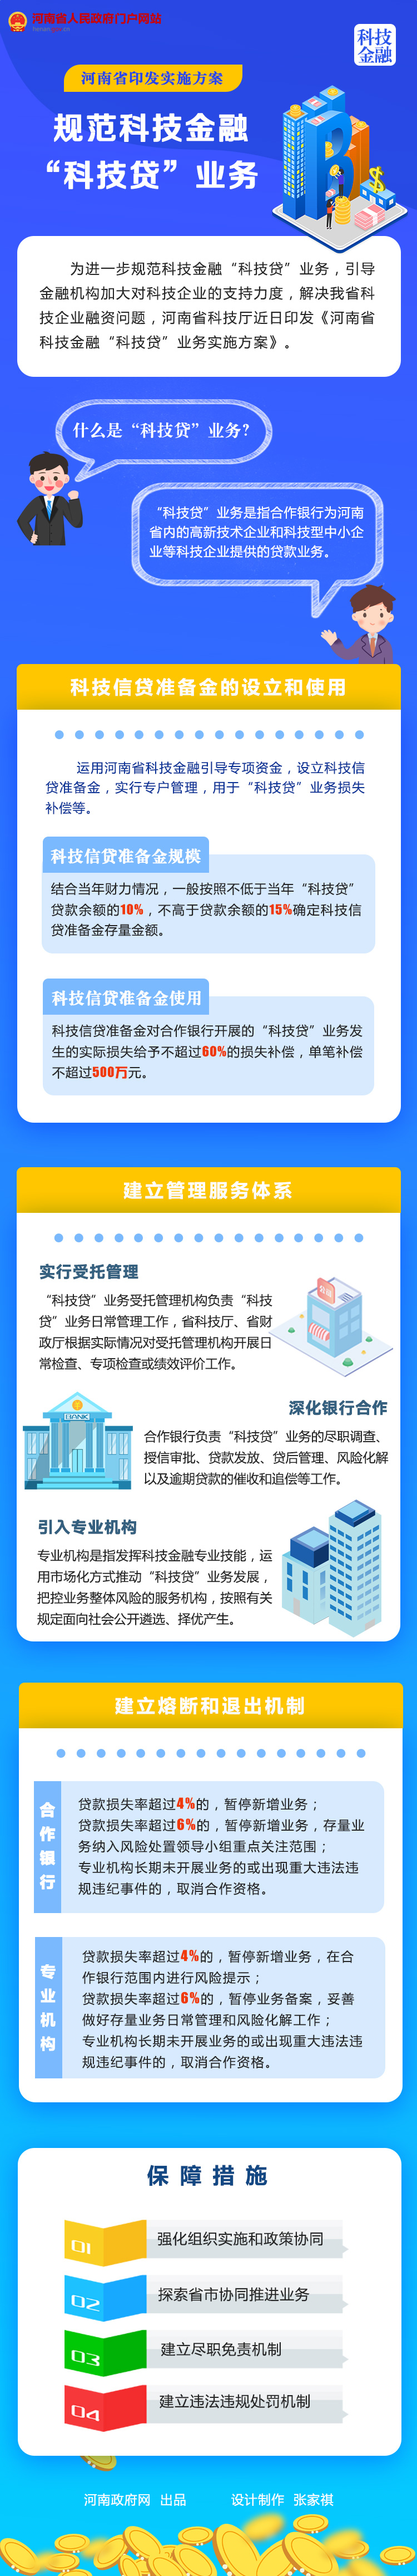 圖解丨河南省印發實施方案 規范科技金融“科技貸”業務